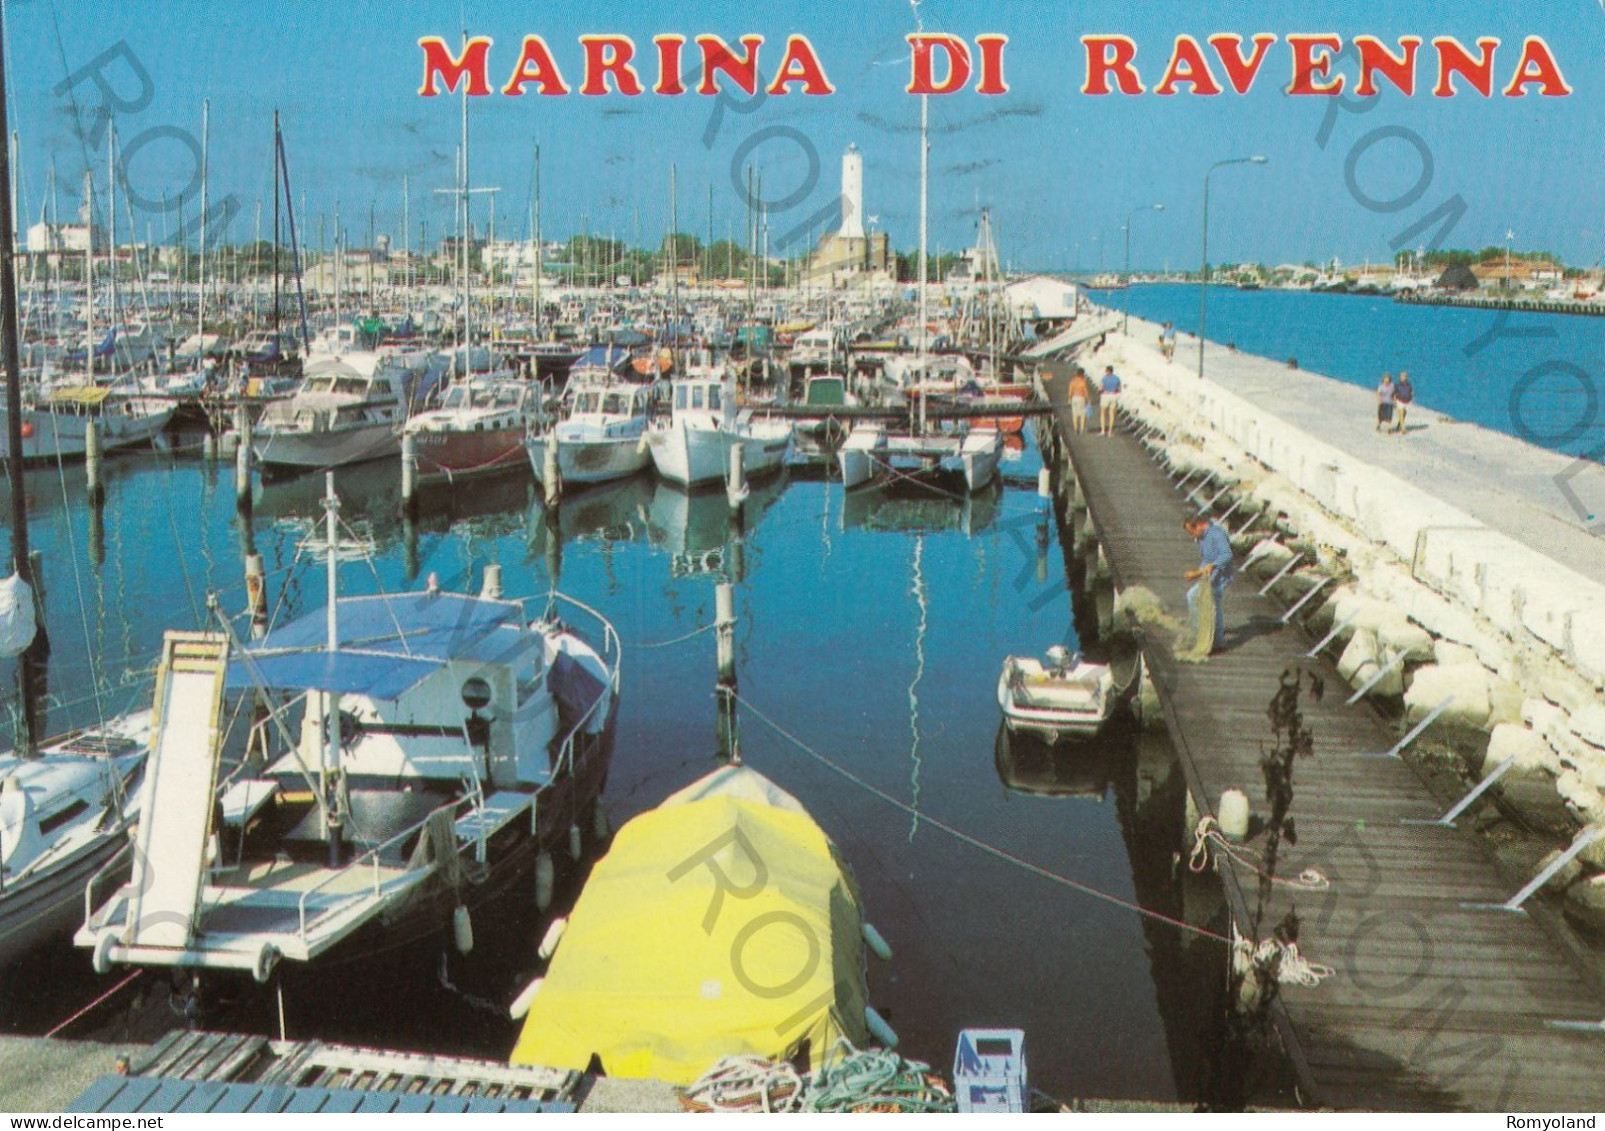 CARTOLINA  C12 MARINA DI RAVENNA,EMILIA ROMAGNA-SPIAGGIA,MARE,SOLE,ESTATE,LUNGOMARE,VACANZA,BELLA ITALIA,VIAGGIATA 1987 - Ravenna